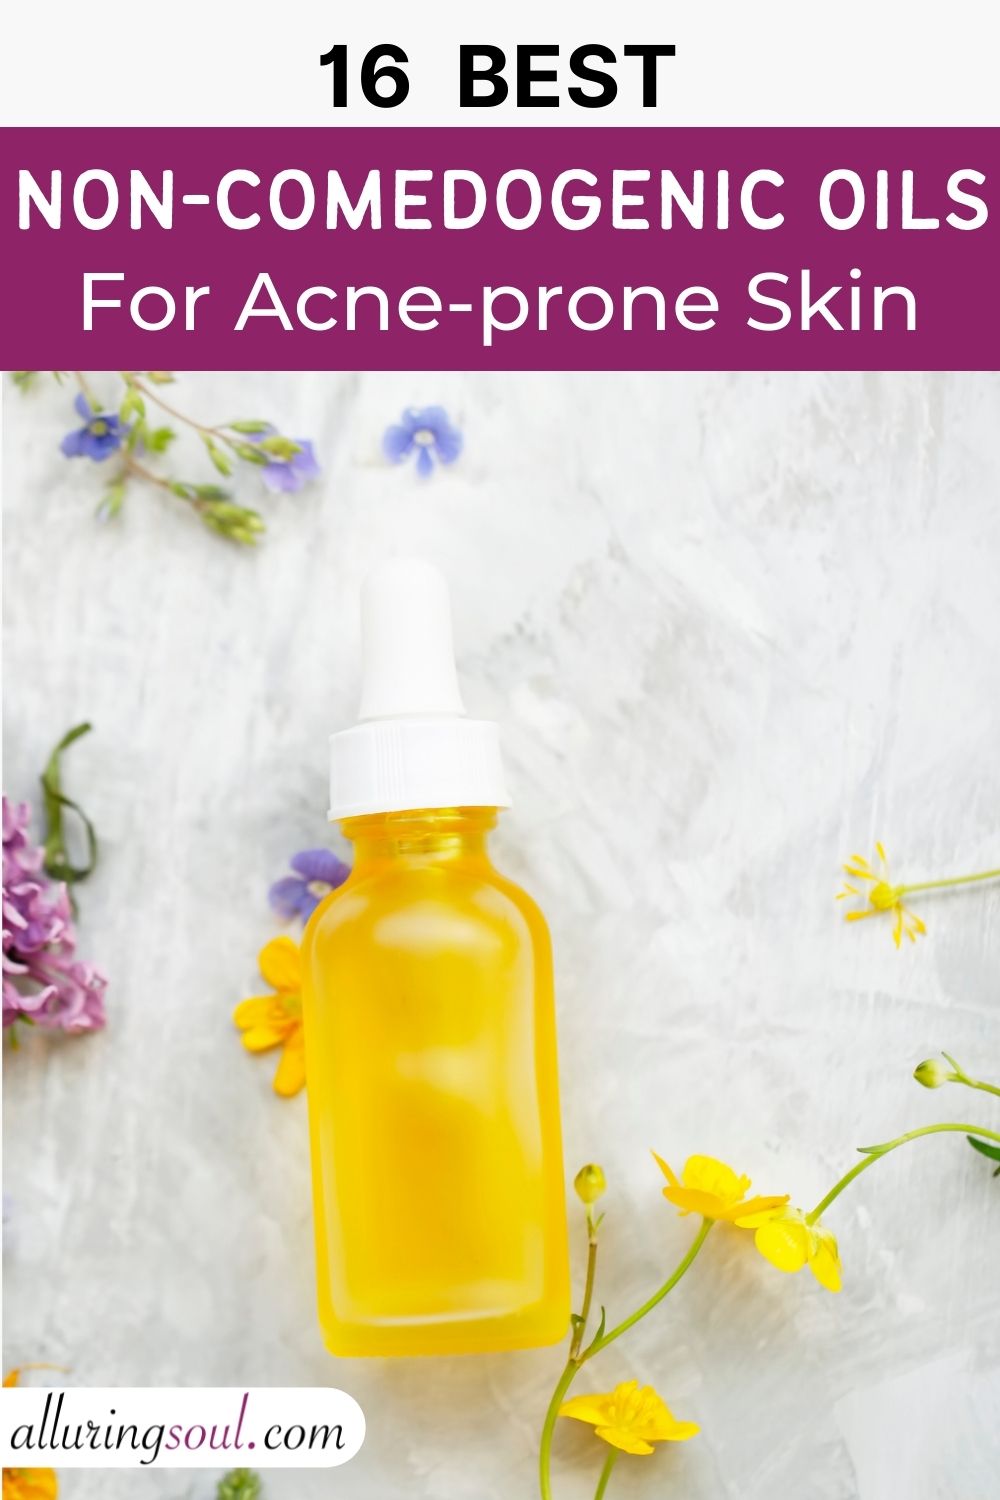 Non-Comedogenic Oils For Acne-prone Skin